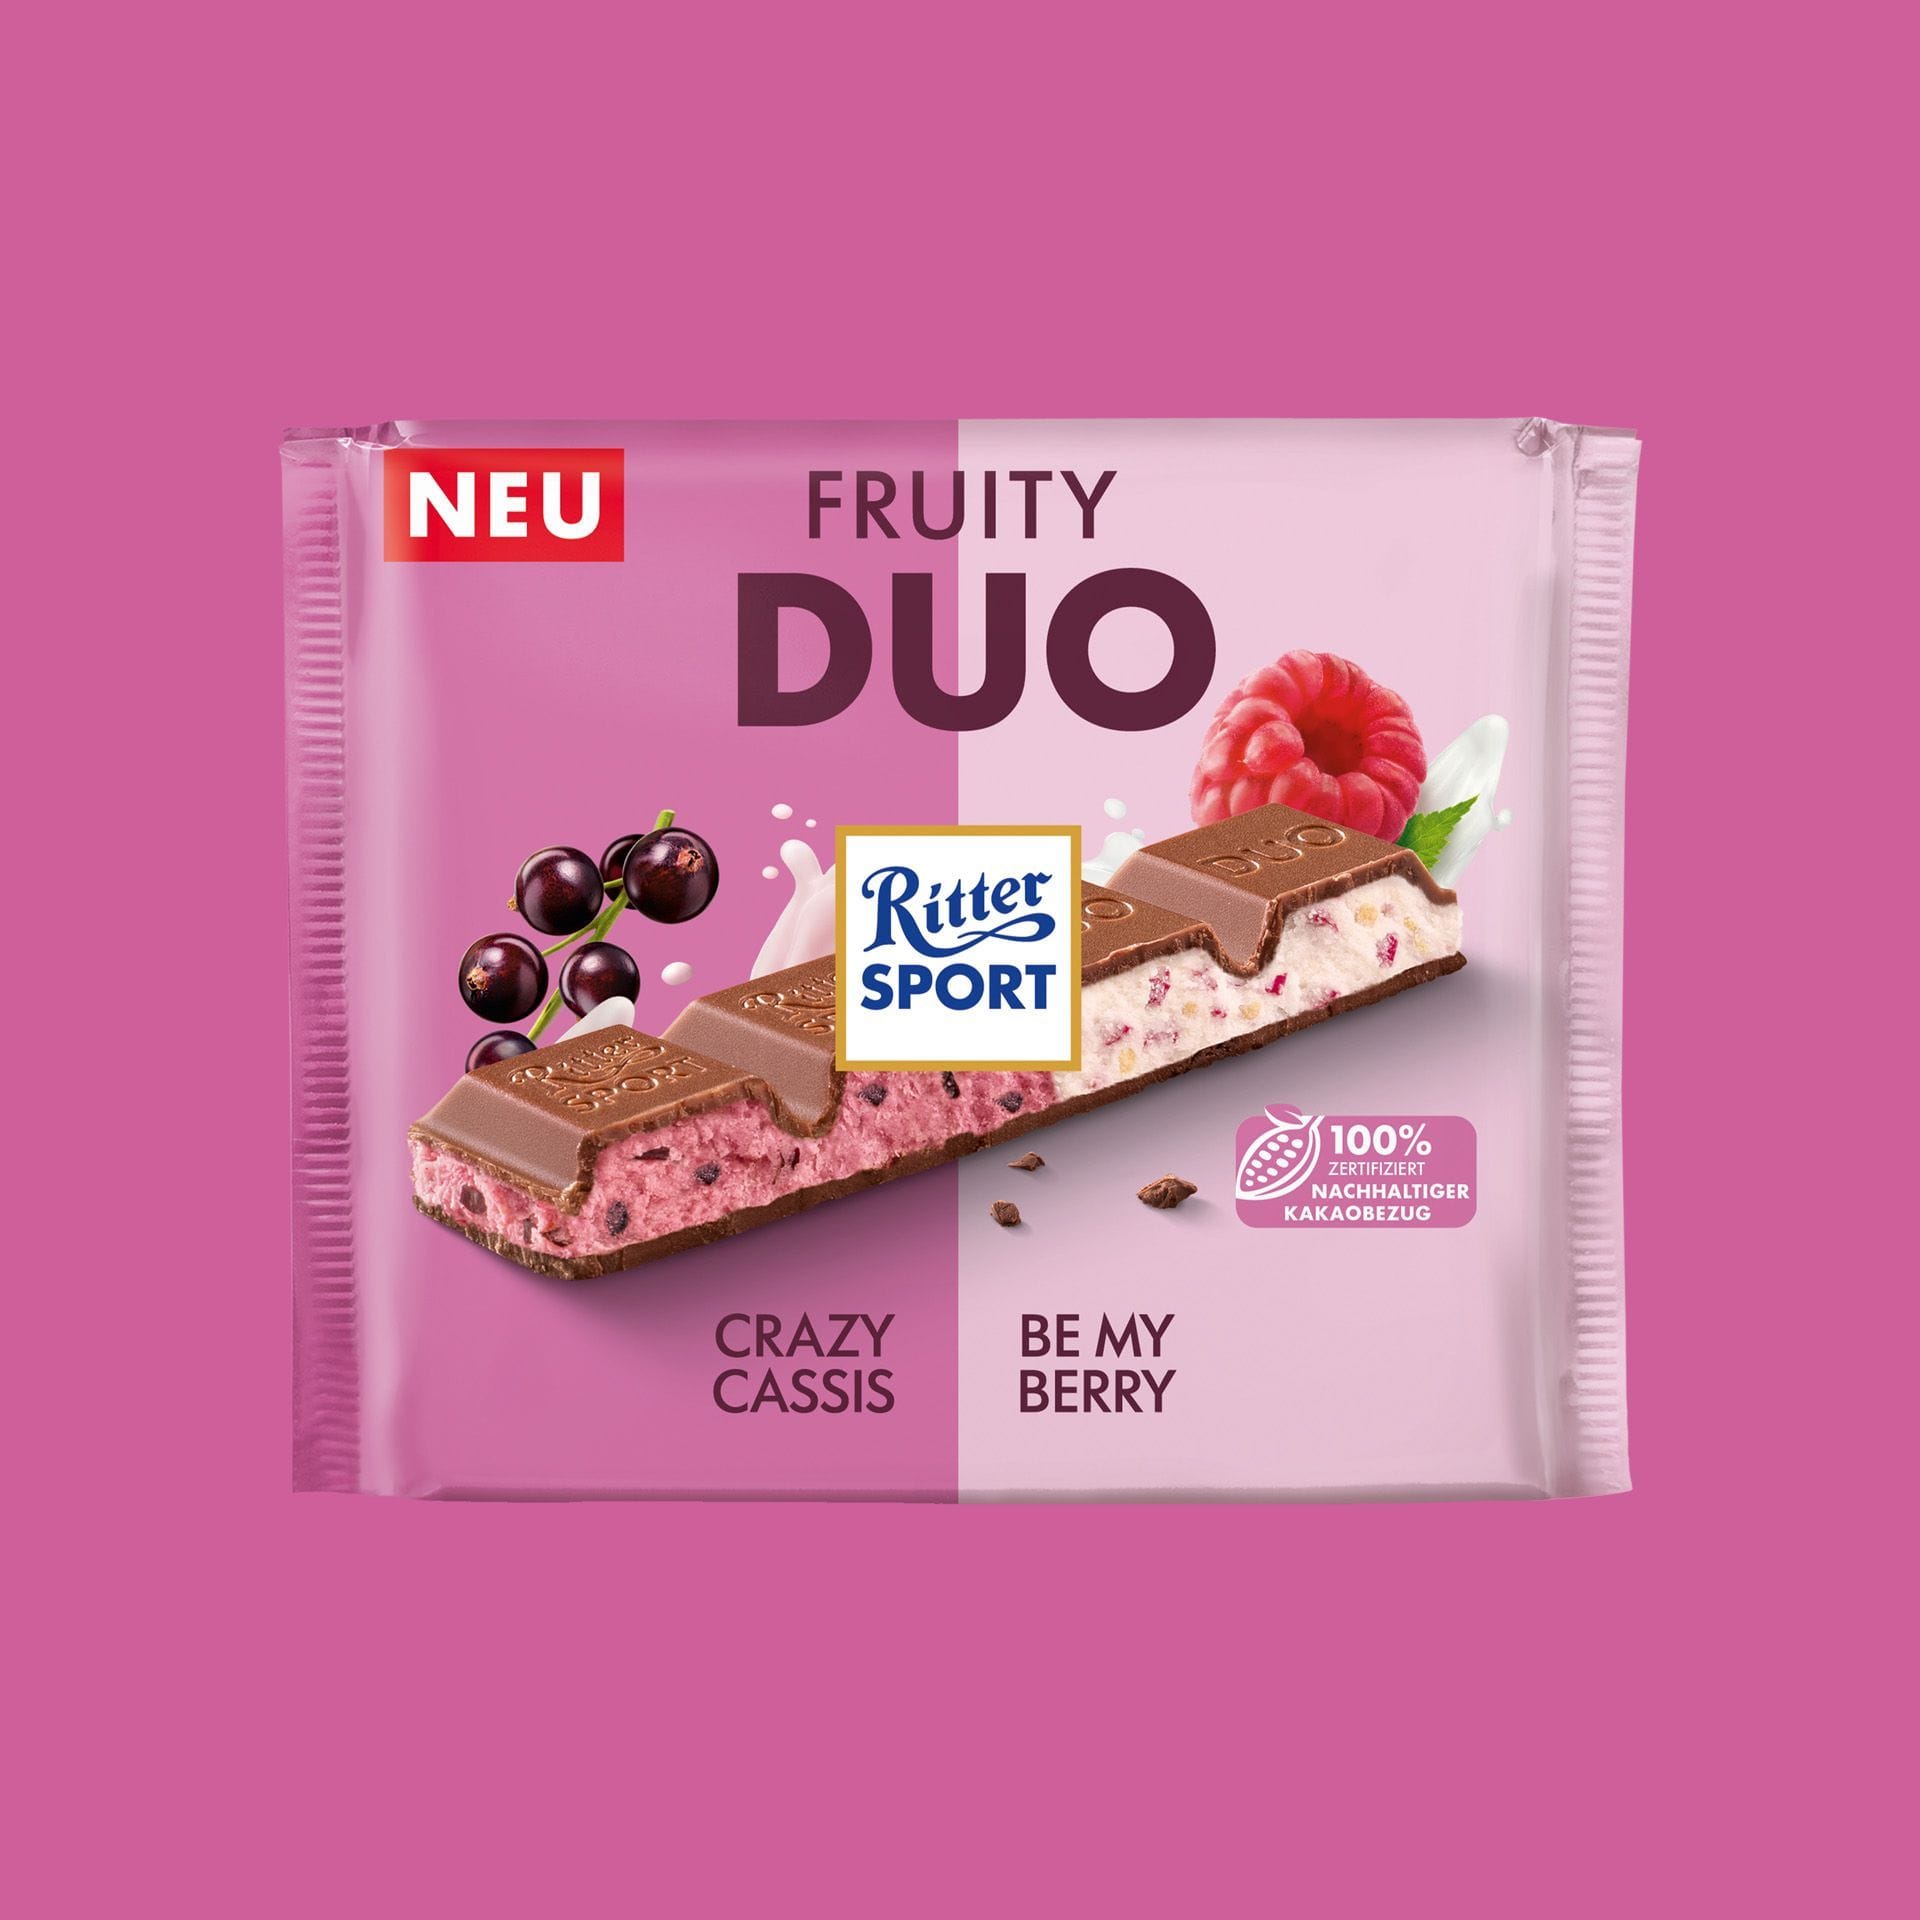 Die neue Großtafel: Fruity Duo von Ritter vereint zwei Fruchtschokoladen-Kreationen in einem Quadrat.